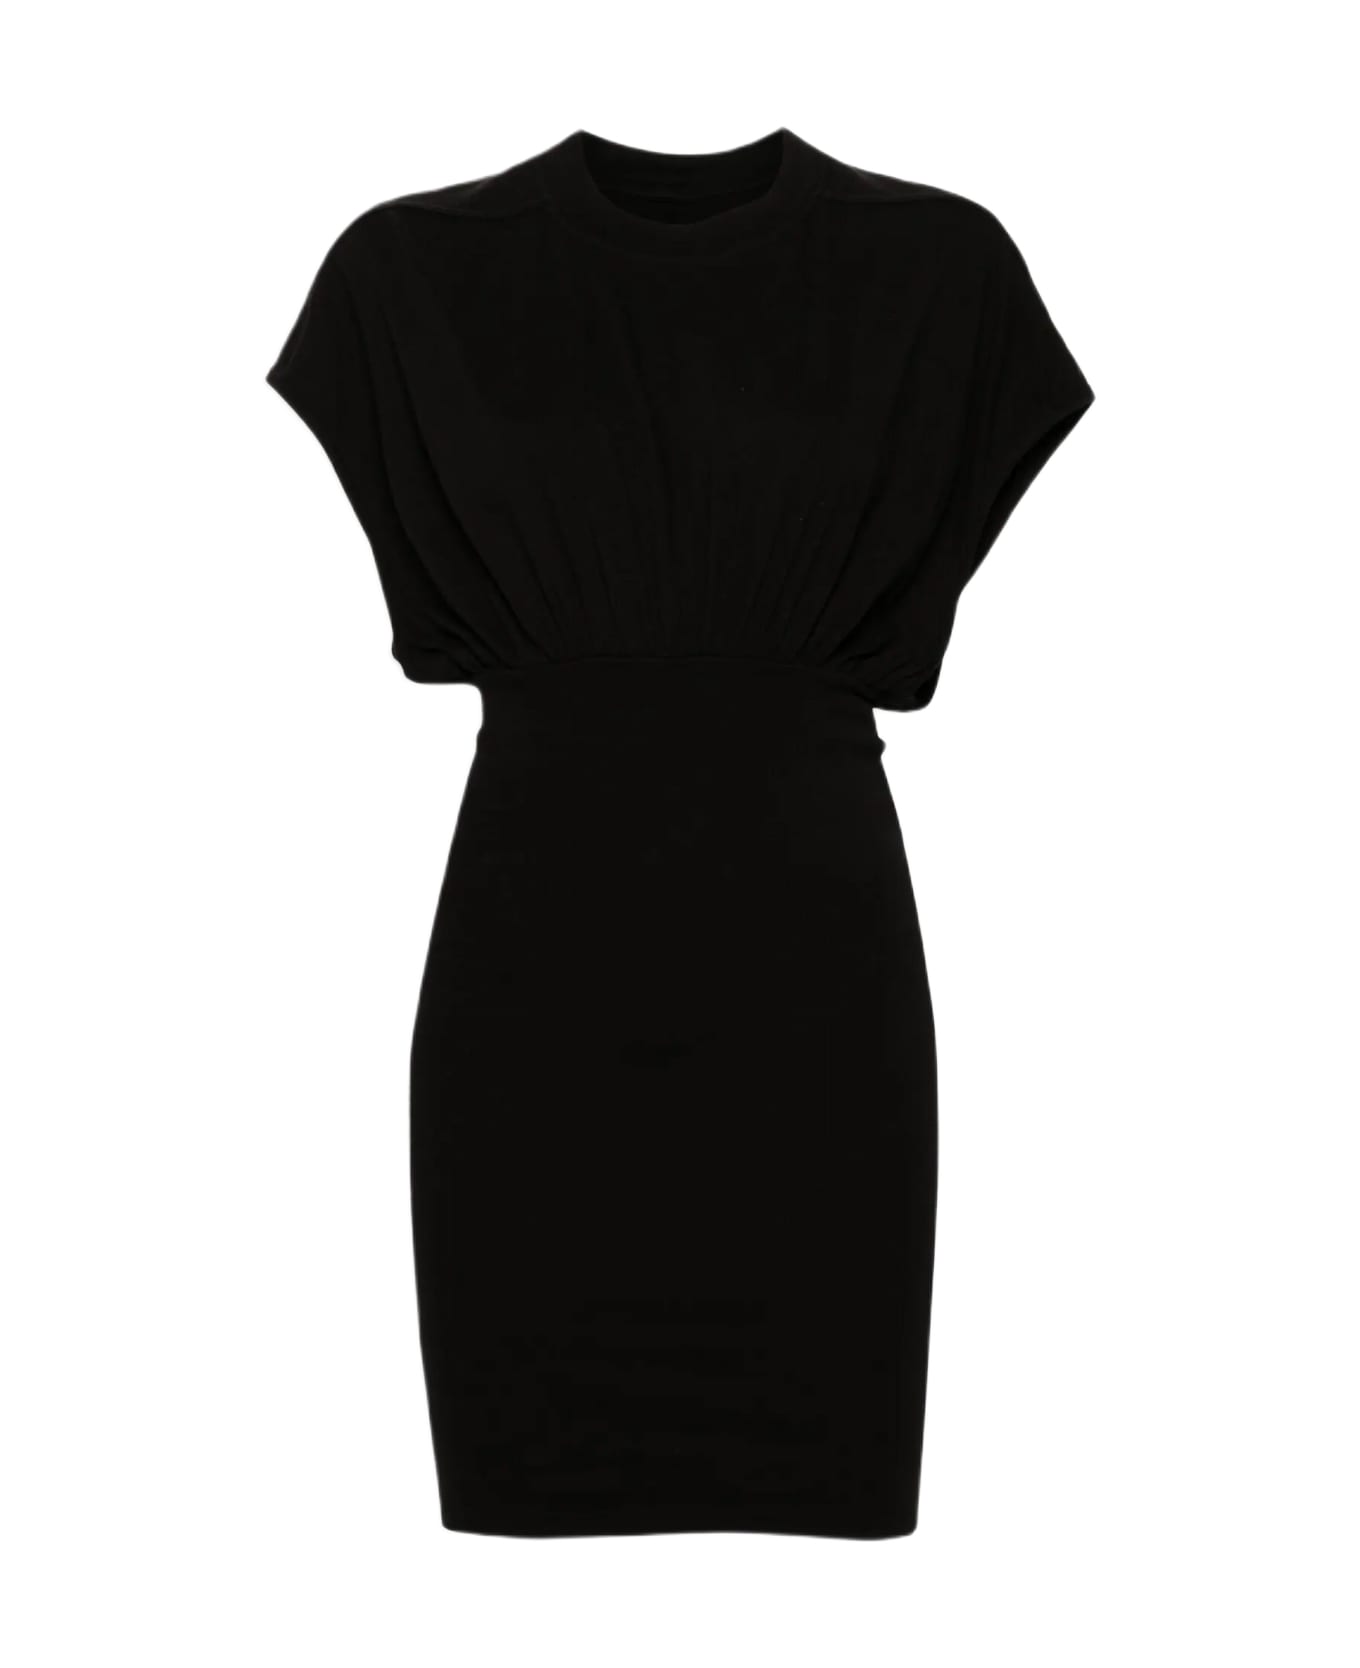 DRKSHDW Cinched Sl Tommy Mini Dress Black cotton short sleveless dress - Cinched SL Tommy Mini Dress - Nero